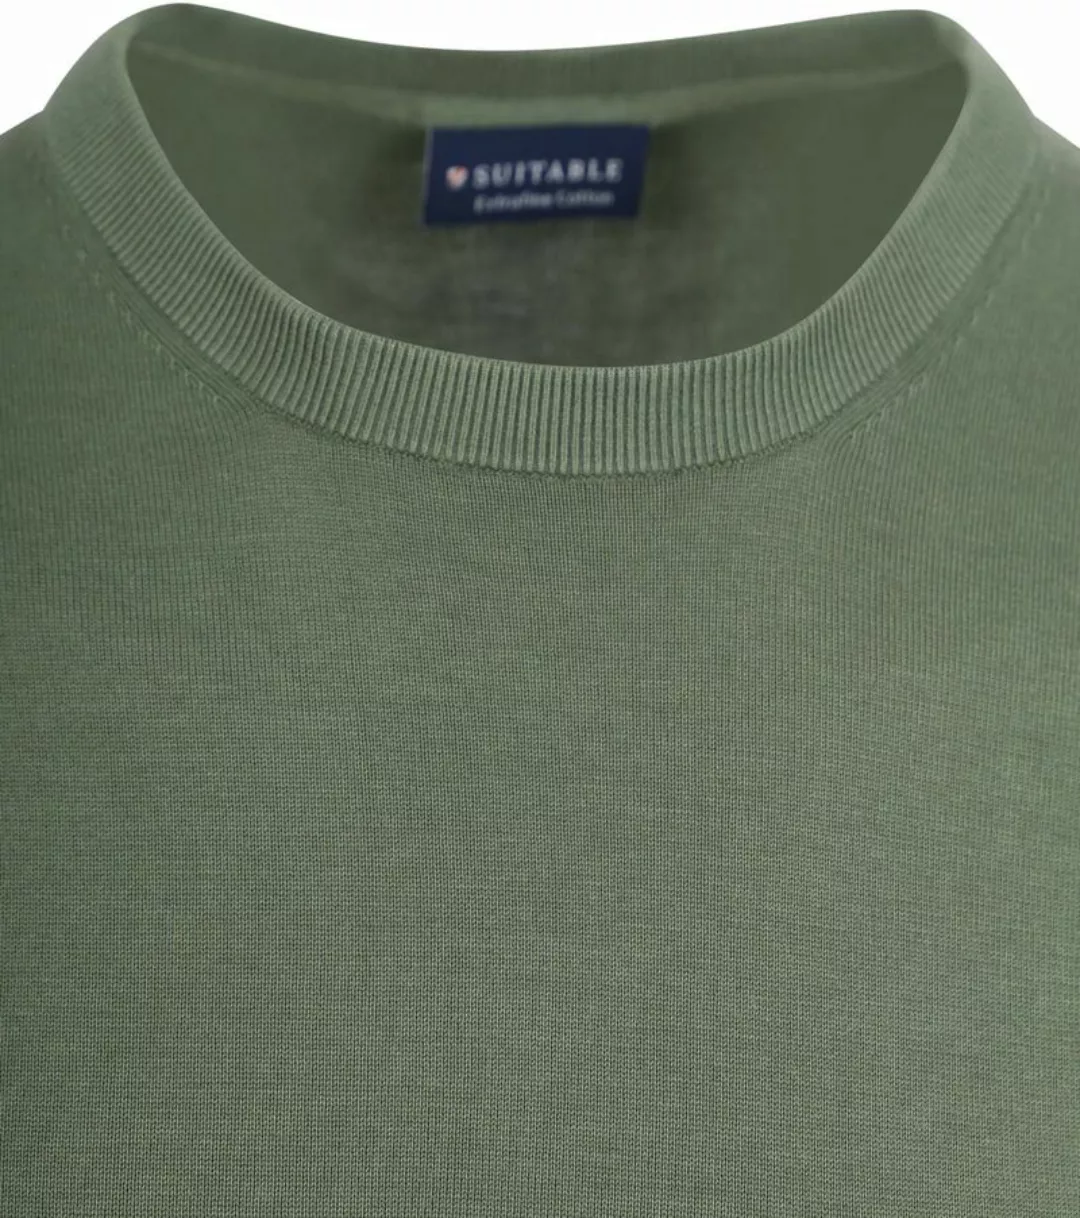 Suitable Knitted T-shirt Grün - Größe XXL günstig online kaufen